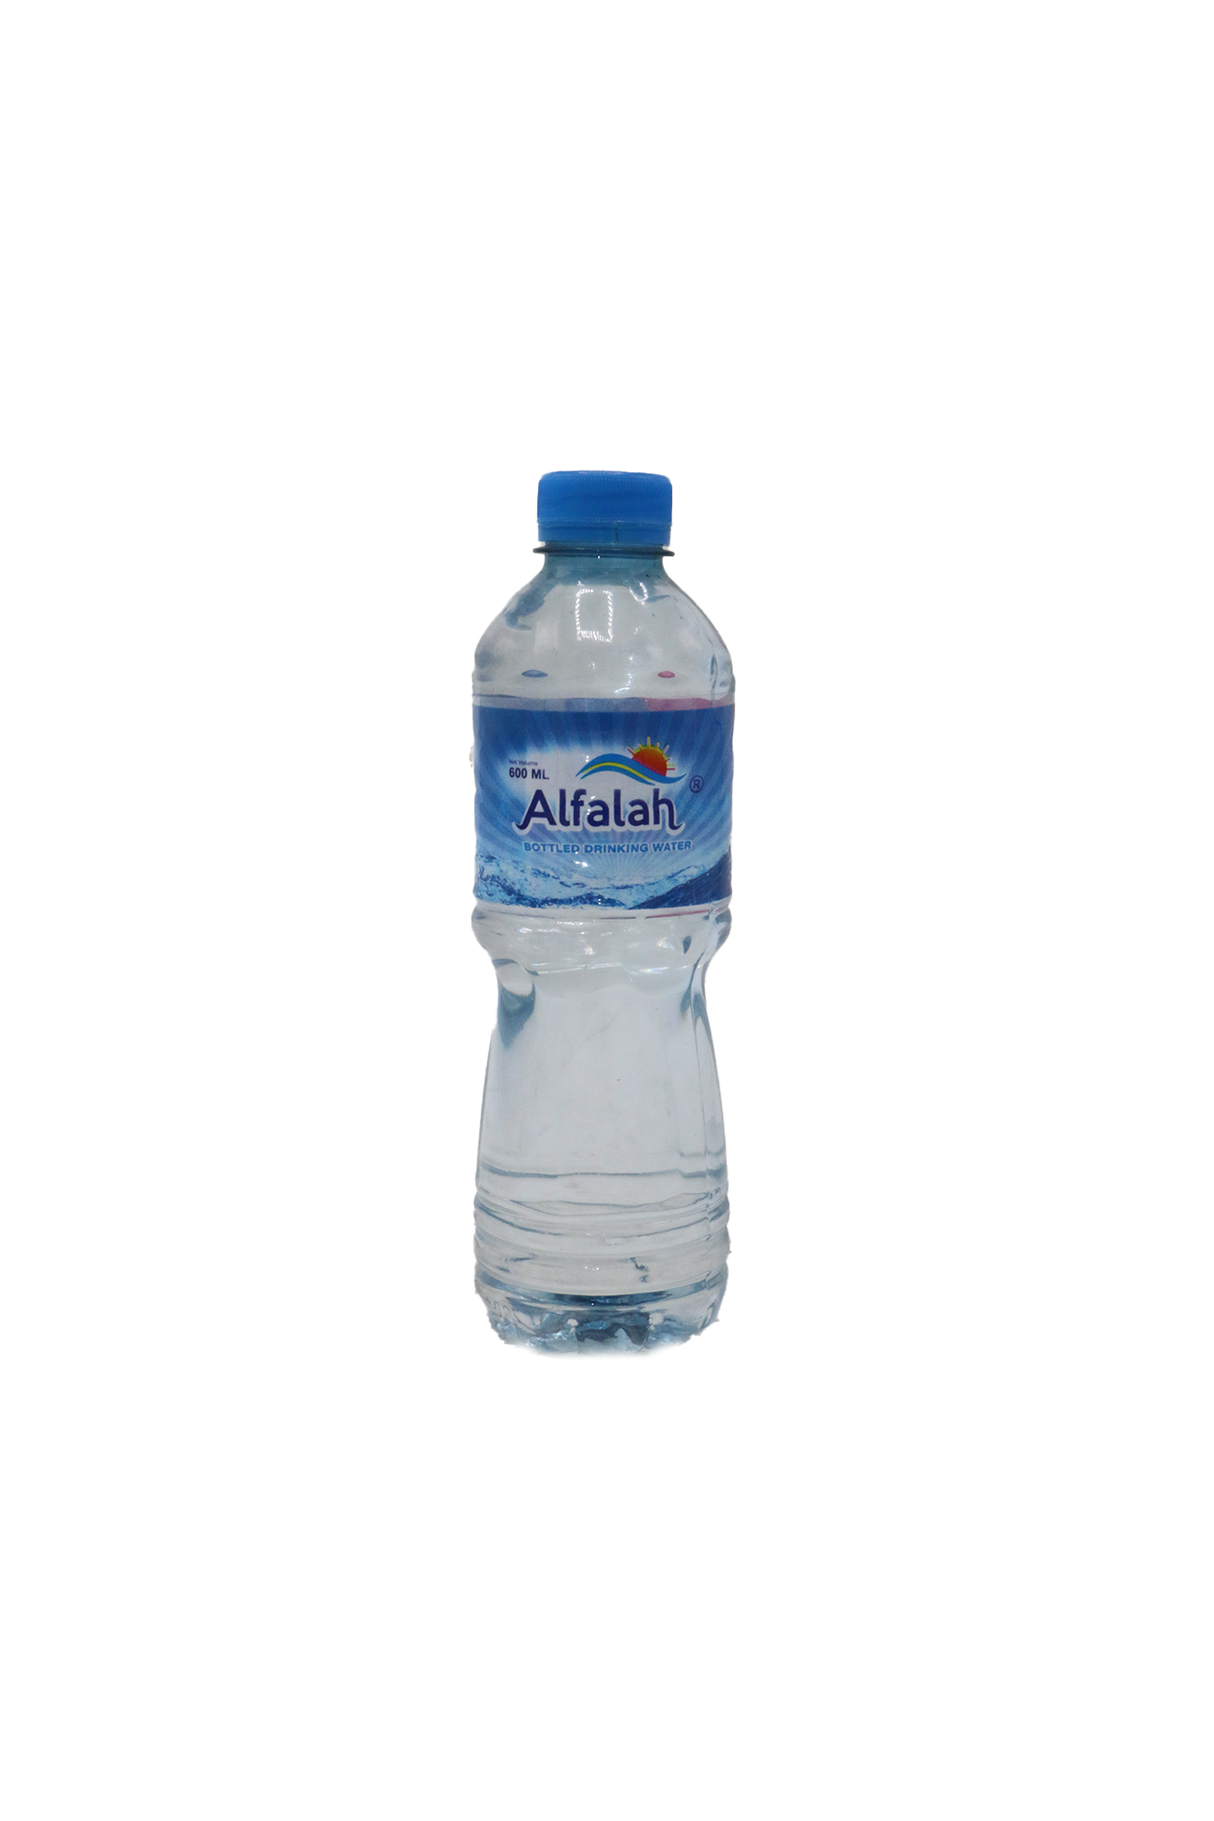 alfalah water 600ml